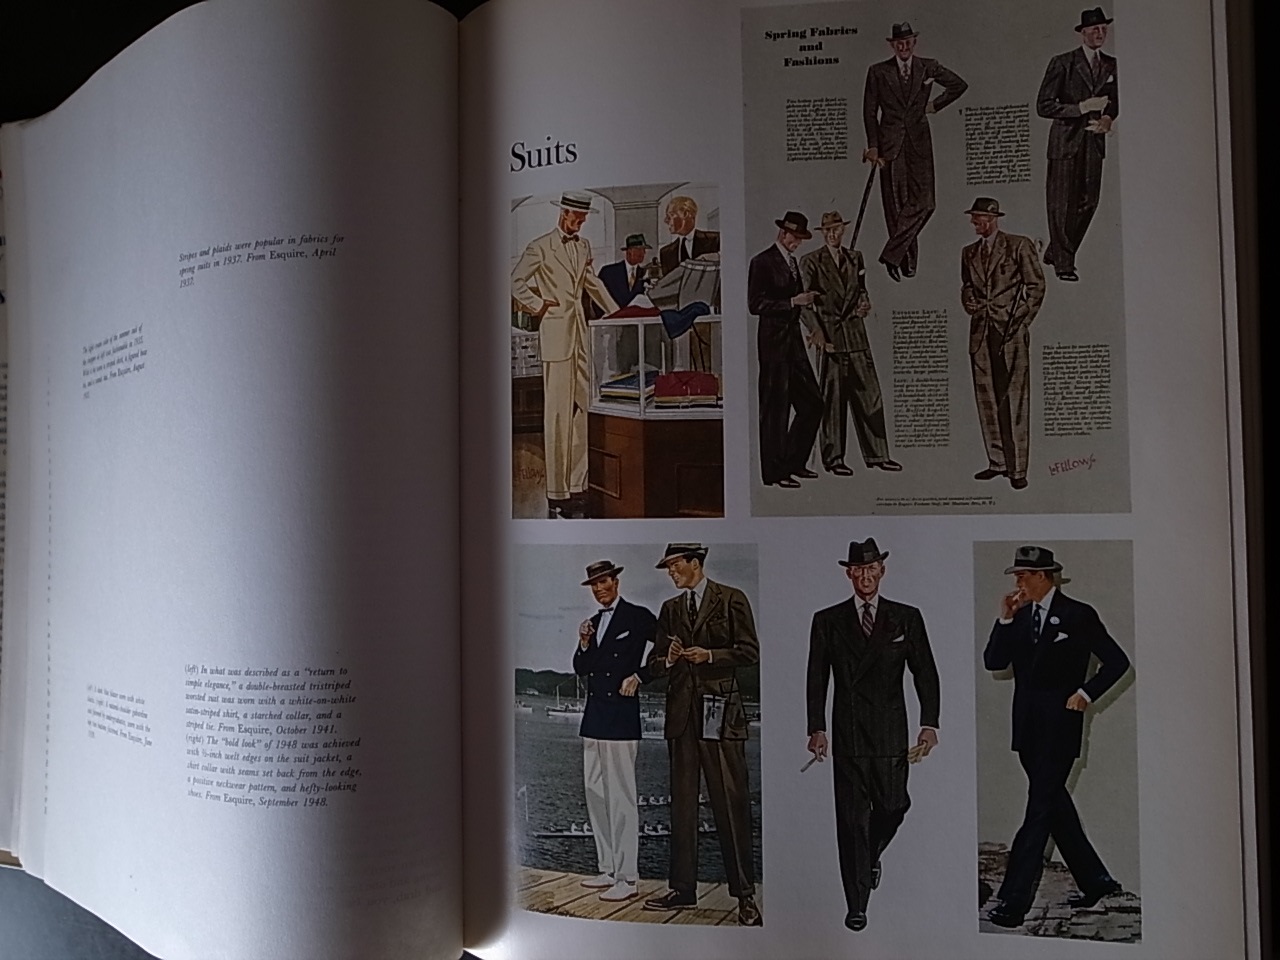 木造 エスカイア版 20世紀メンズファッション百科事典（日本語版